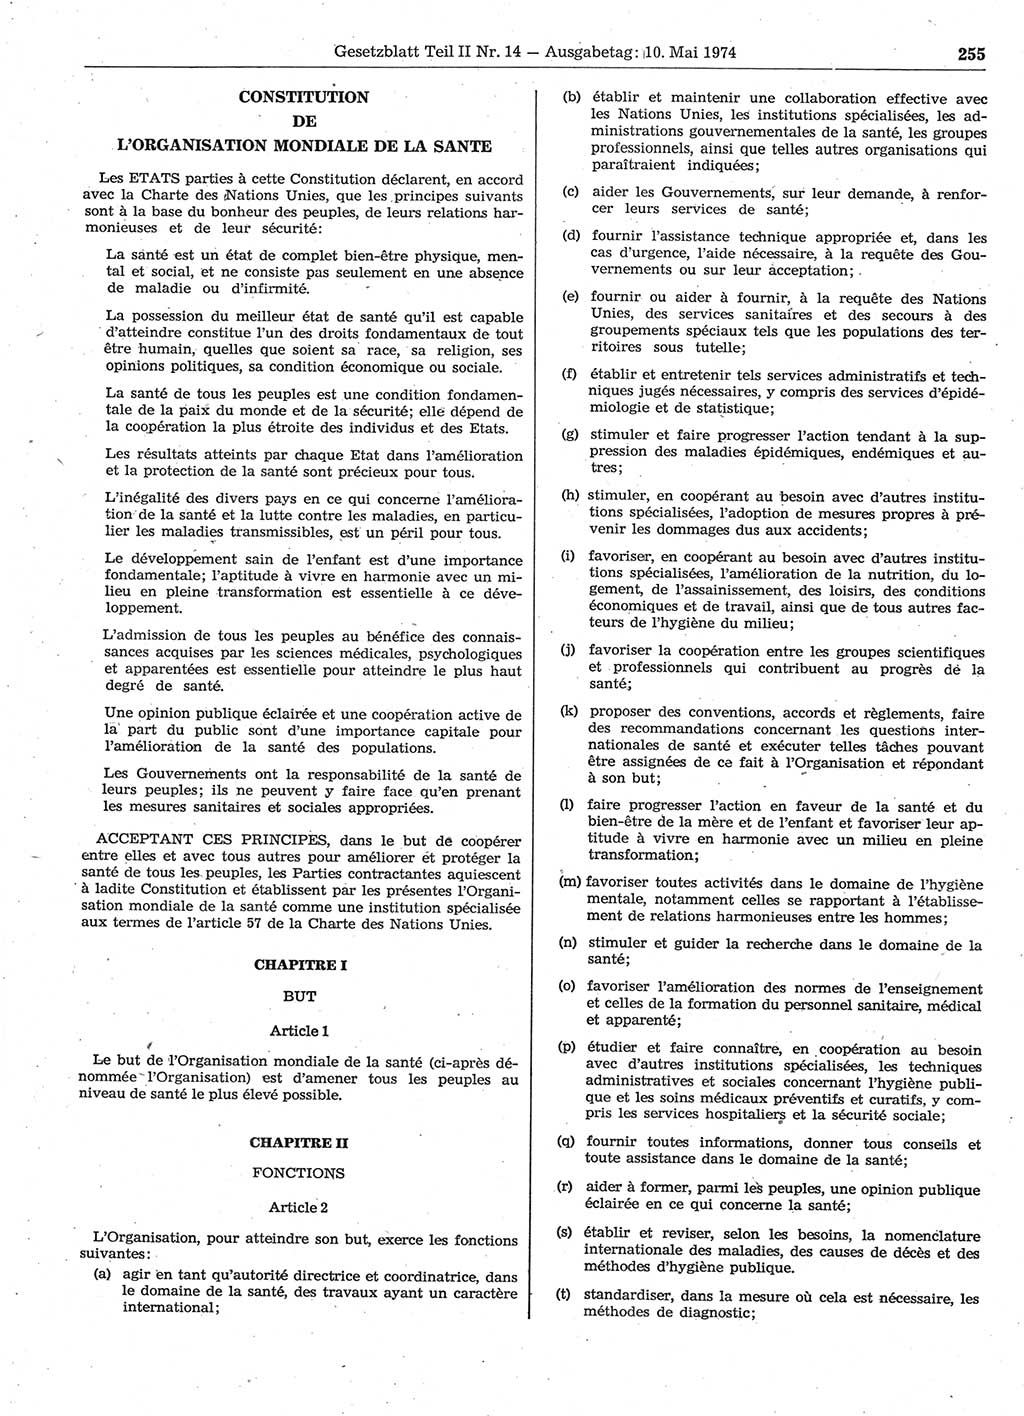 Gesetzblatt (GBl.) der Deutschen Demokratischen Republik (DDR) Teil ⅠⅠ 1974, Seite 255 (GBl. DDR ⅠⅠ 1974, S. 255)